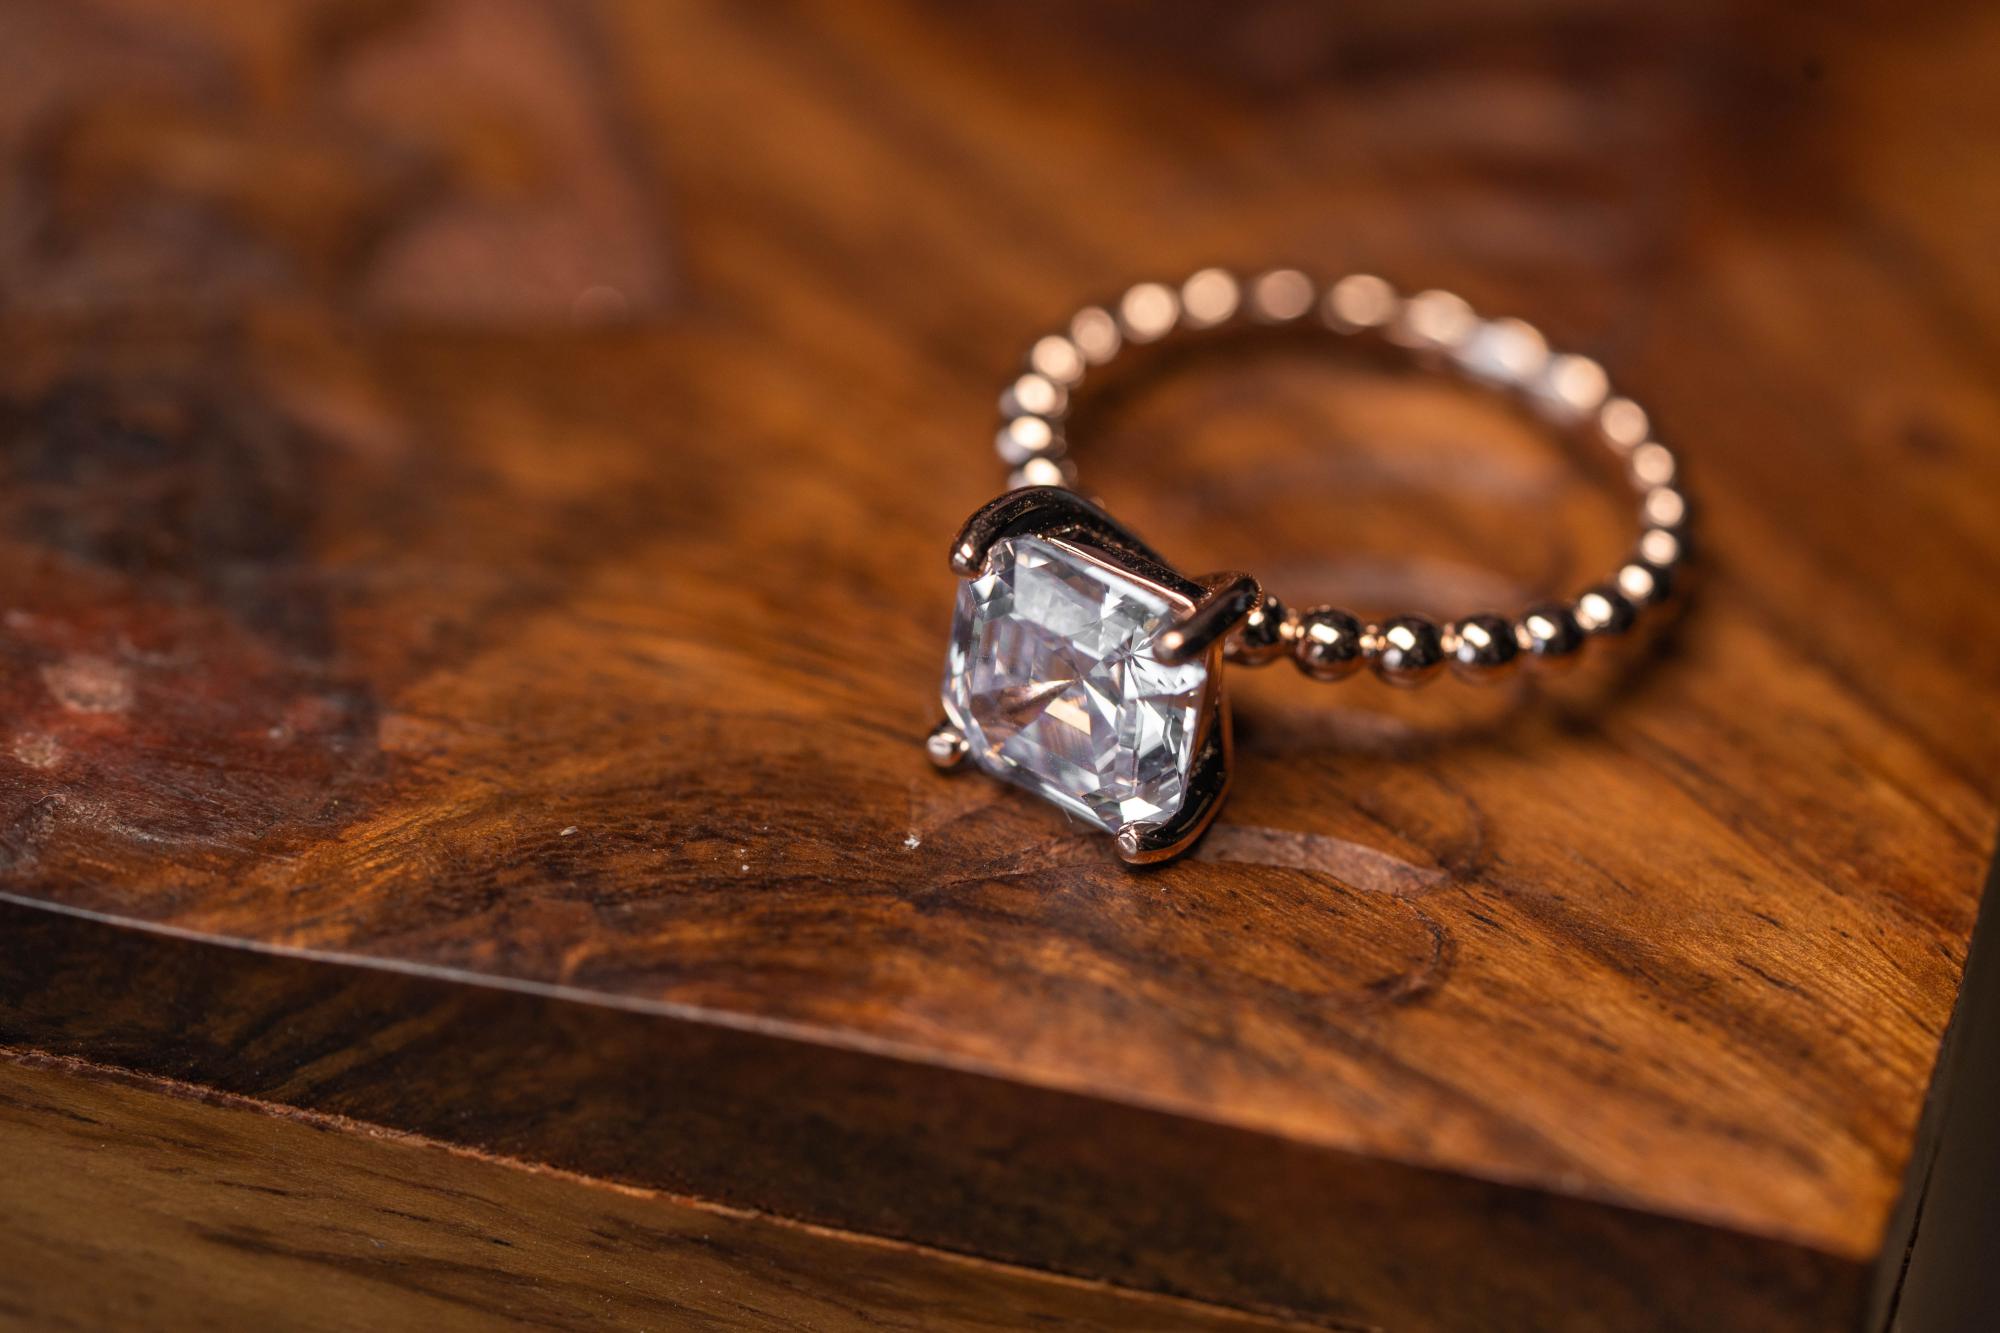 3.00carat Asscher Cut Lab grown diamond Engagement Ring